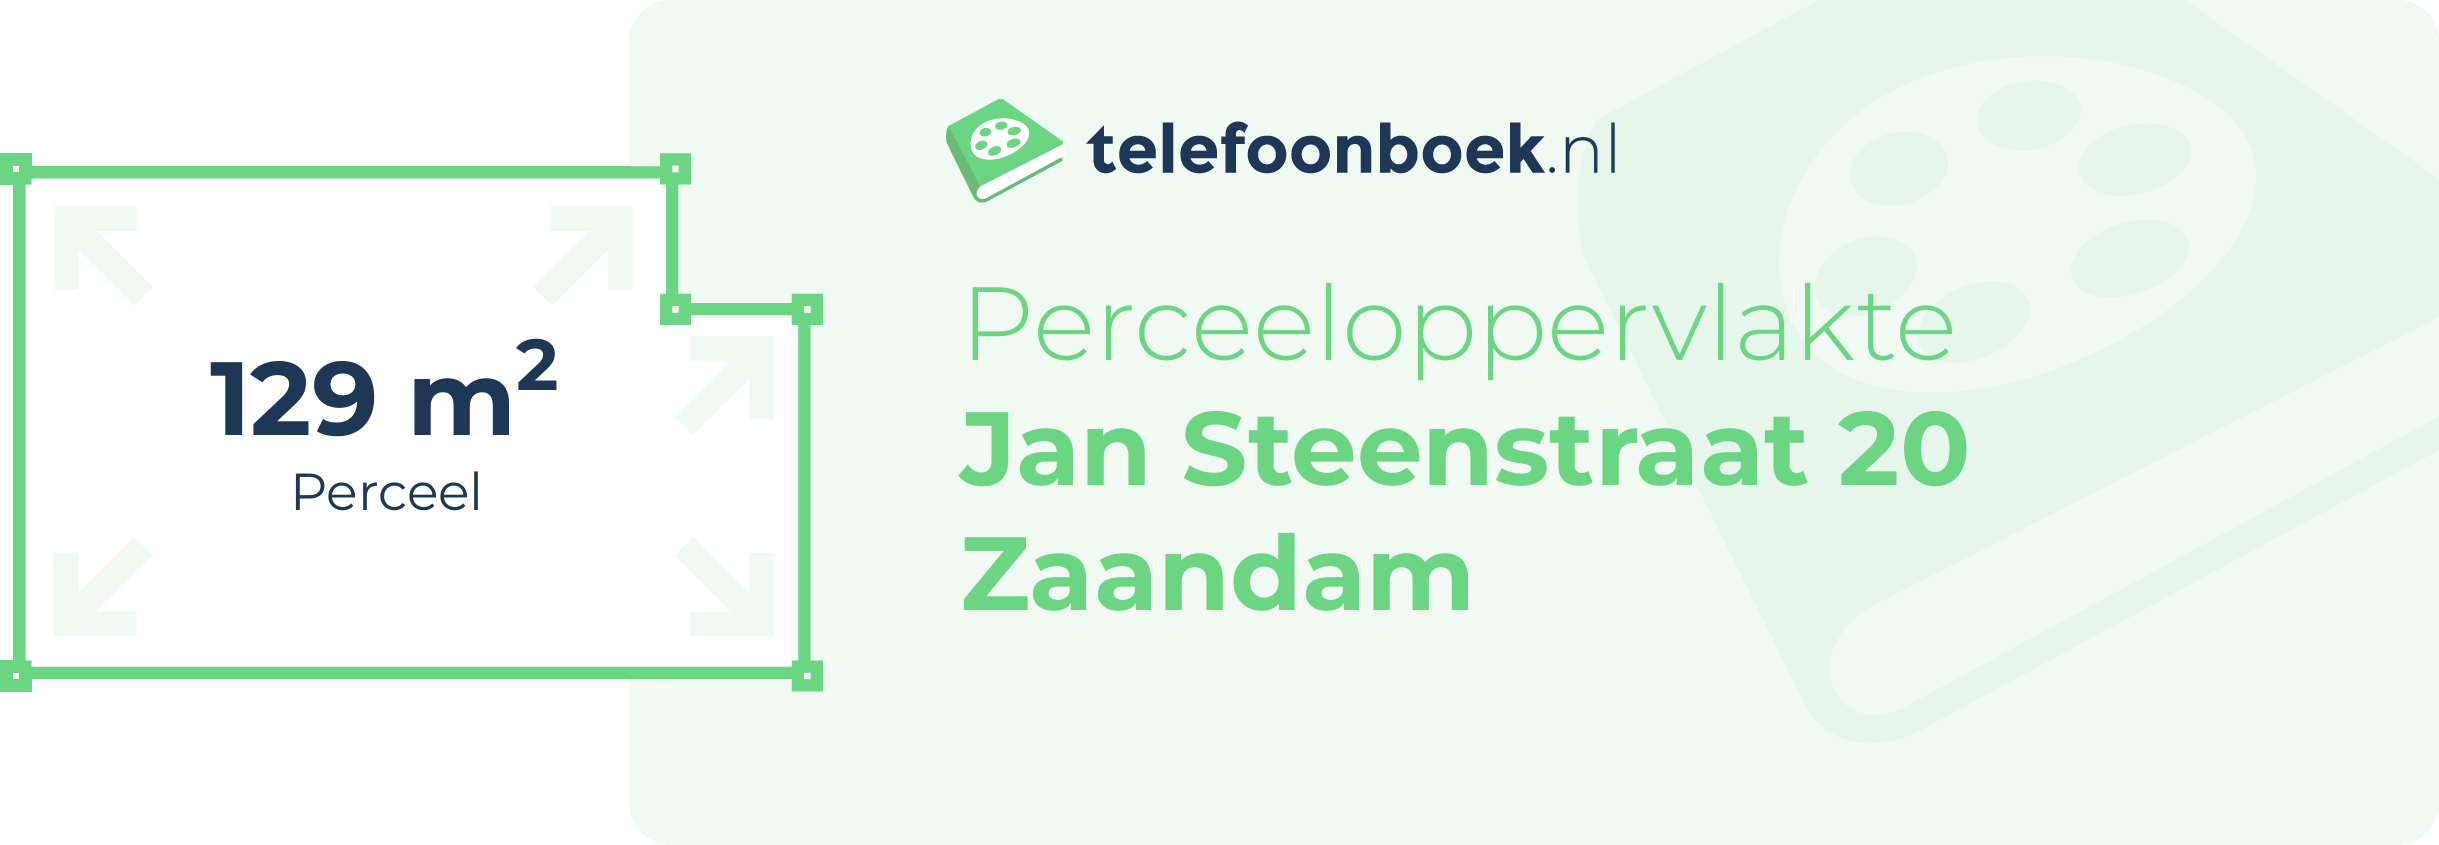 Perceeloppervlakte Jan Steenstraat 20 Zaandam